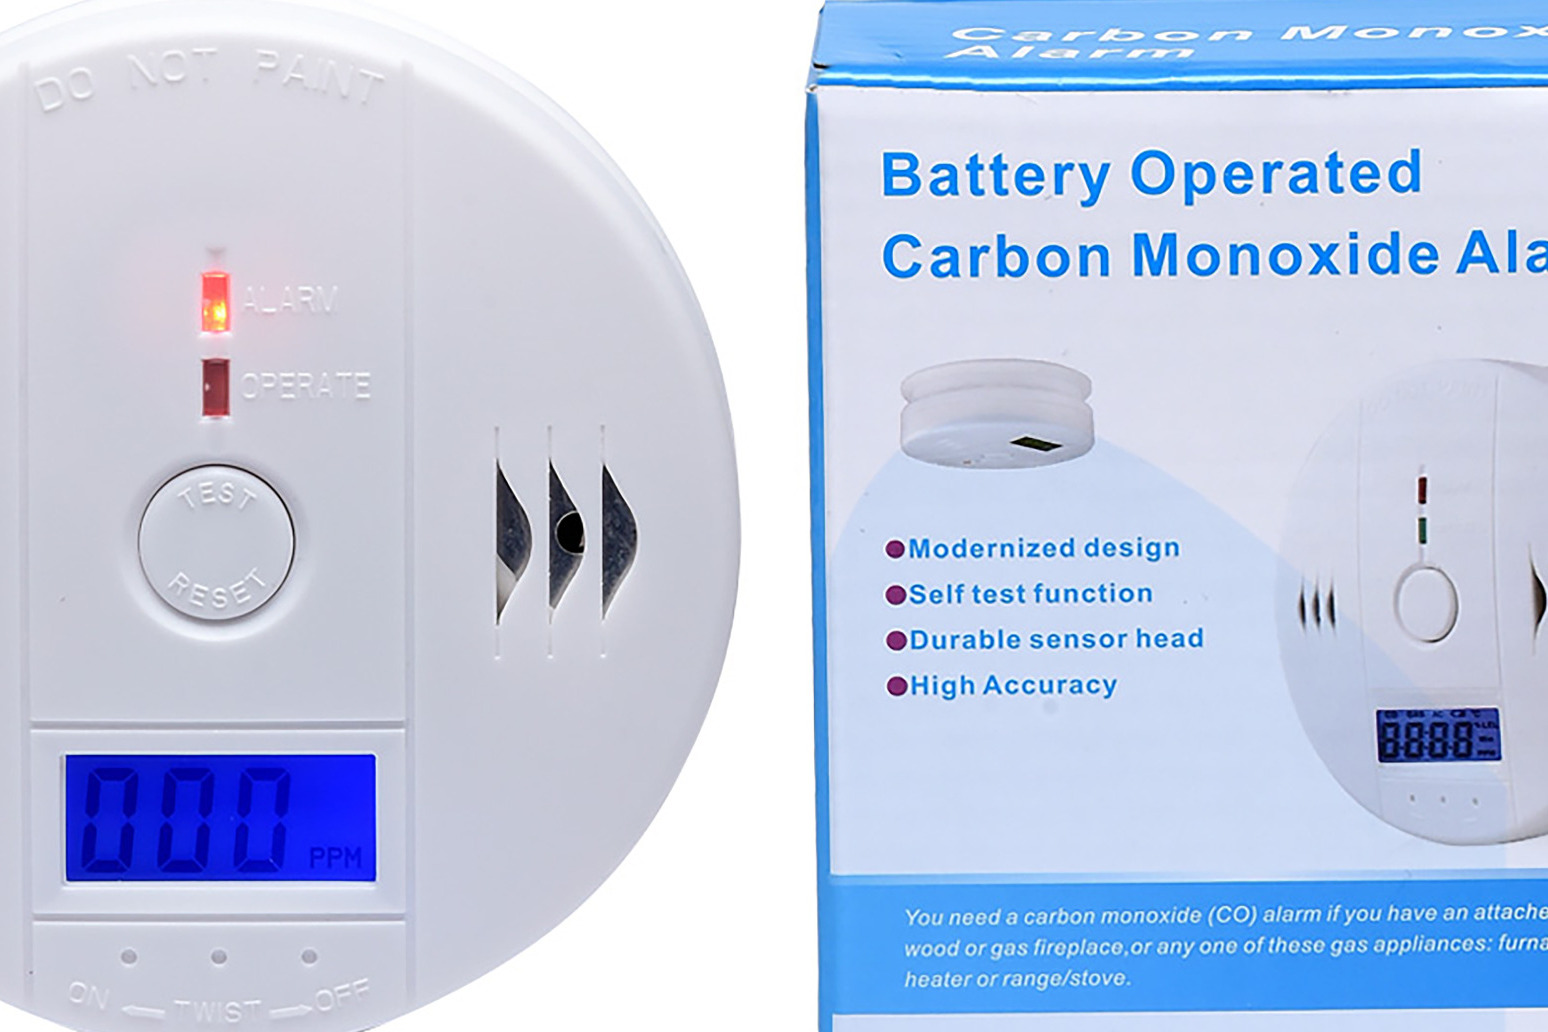 Dangerous carbon monoxide alarms sold through online marketplaces 